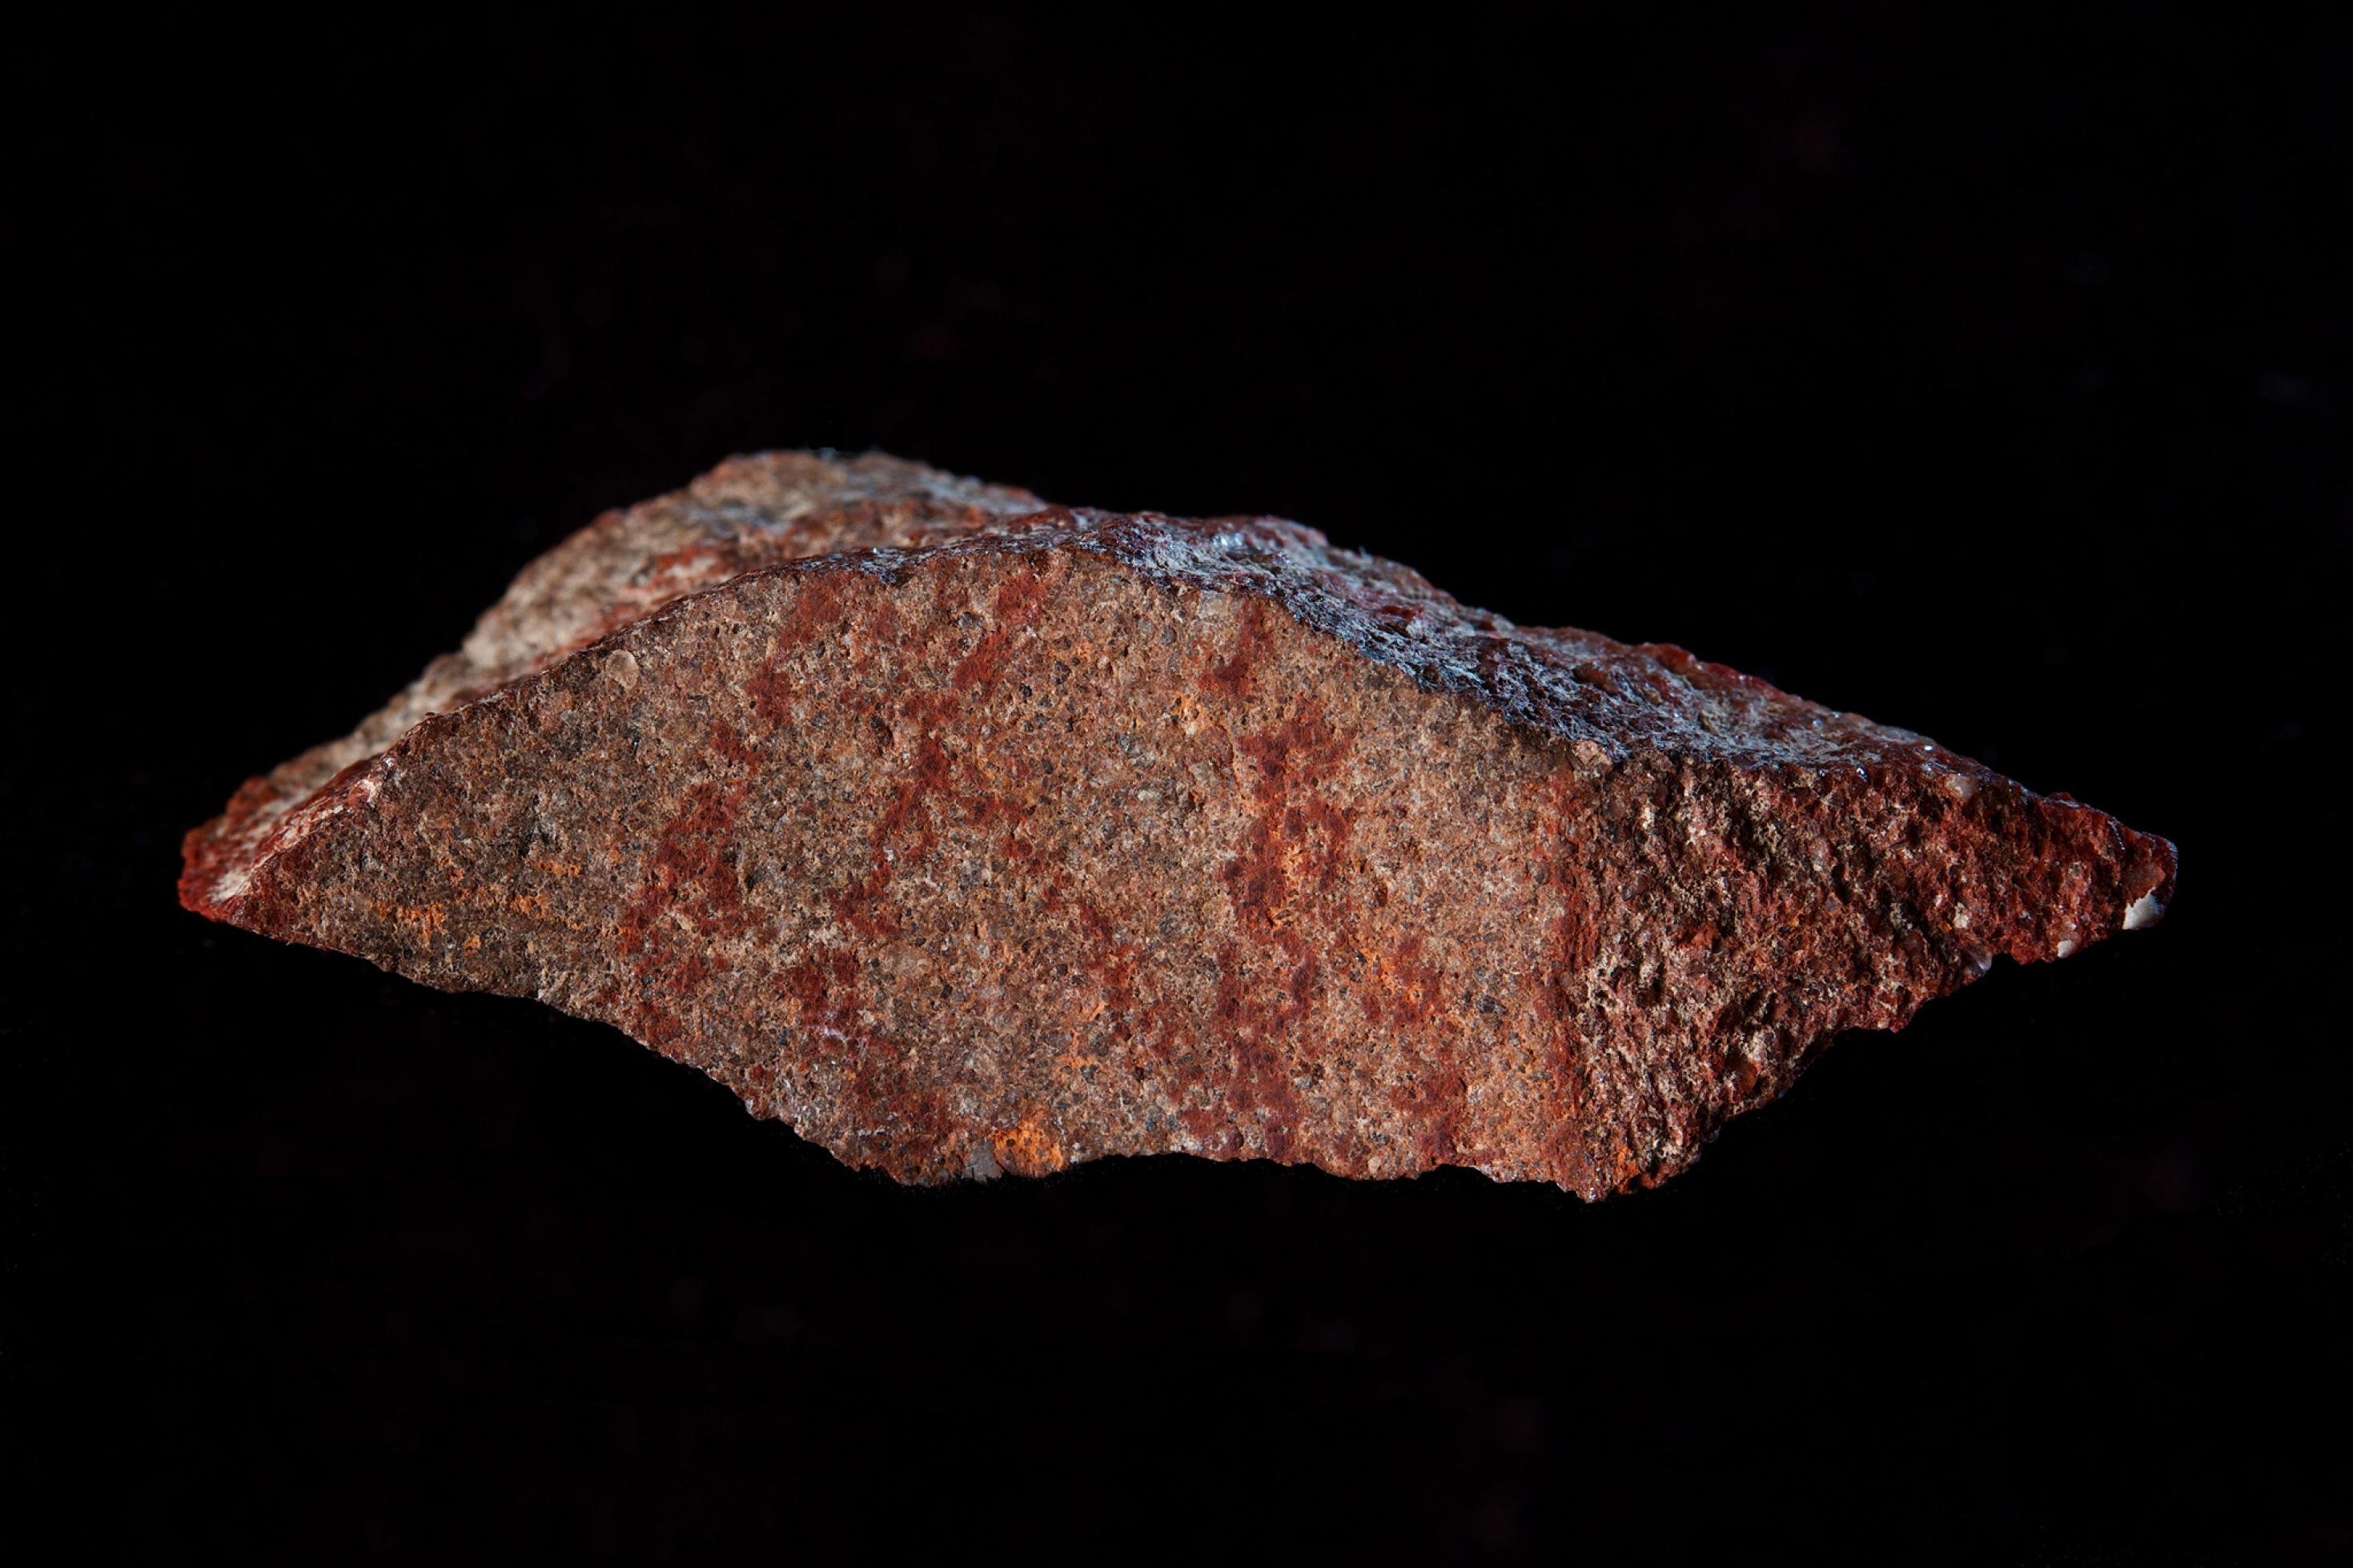 Vor schwarzem Hintergrund ist ein länglicher, rotbrauner Stein mit scharfen Kanten und einer relativ ebenen Vorderseite zu sehen. Auf ihr ist ein dunkelrotes, abstraktes Muster aus mehreren Strichen zu erkennen.